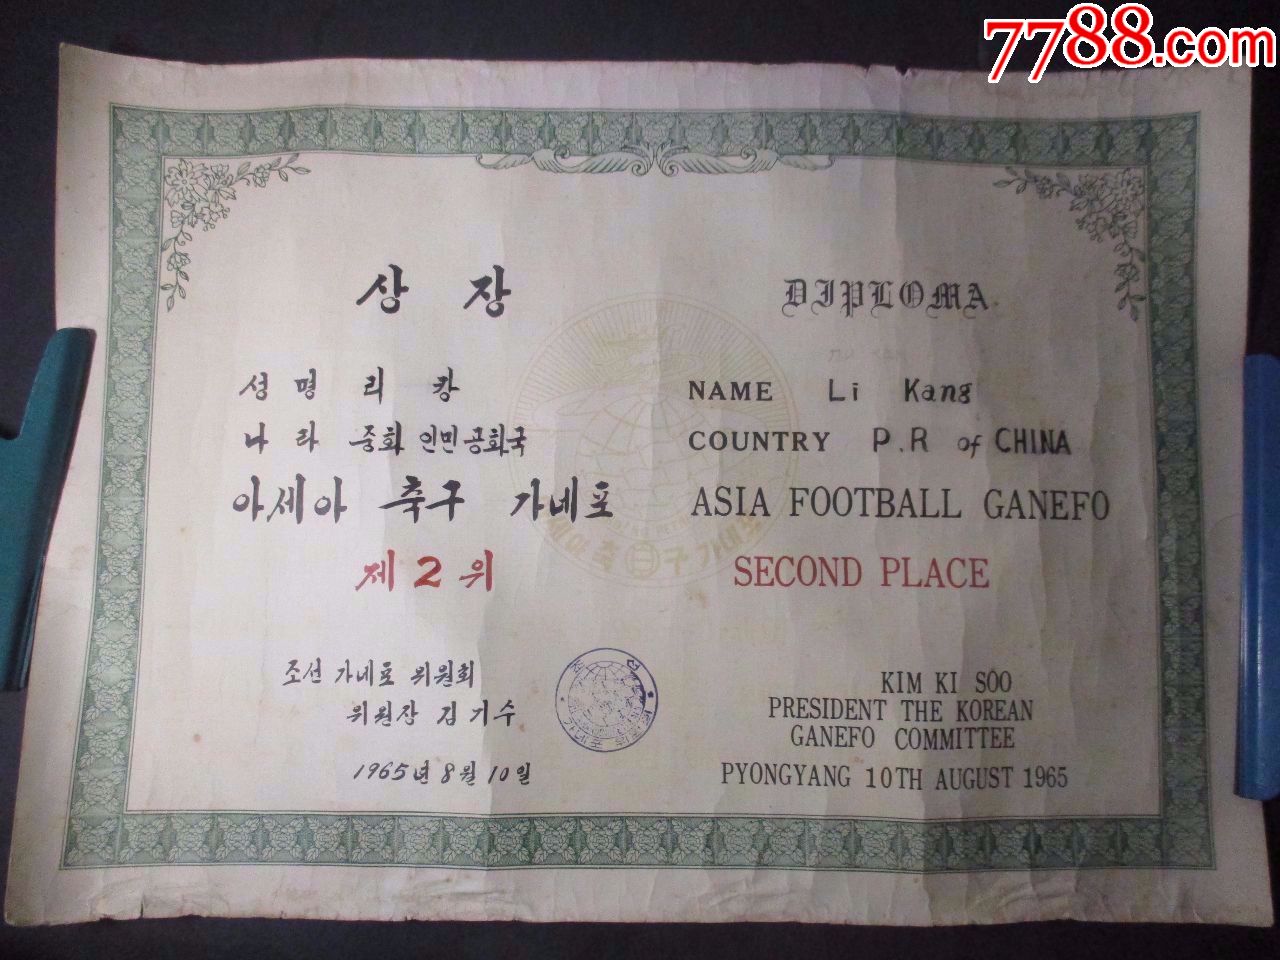 六十年代:国际足球比赛:中国球员获奖奖状和喜